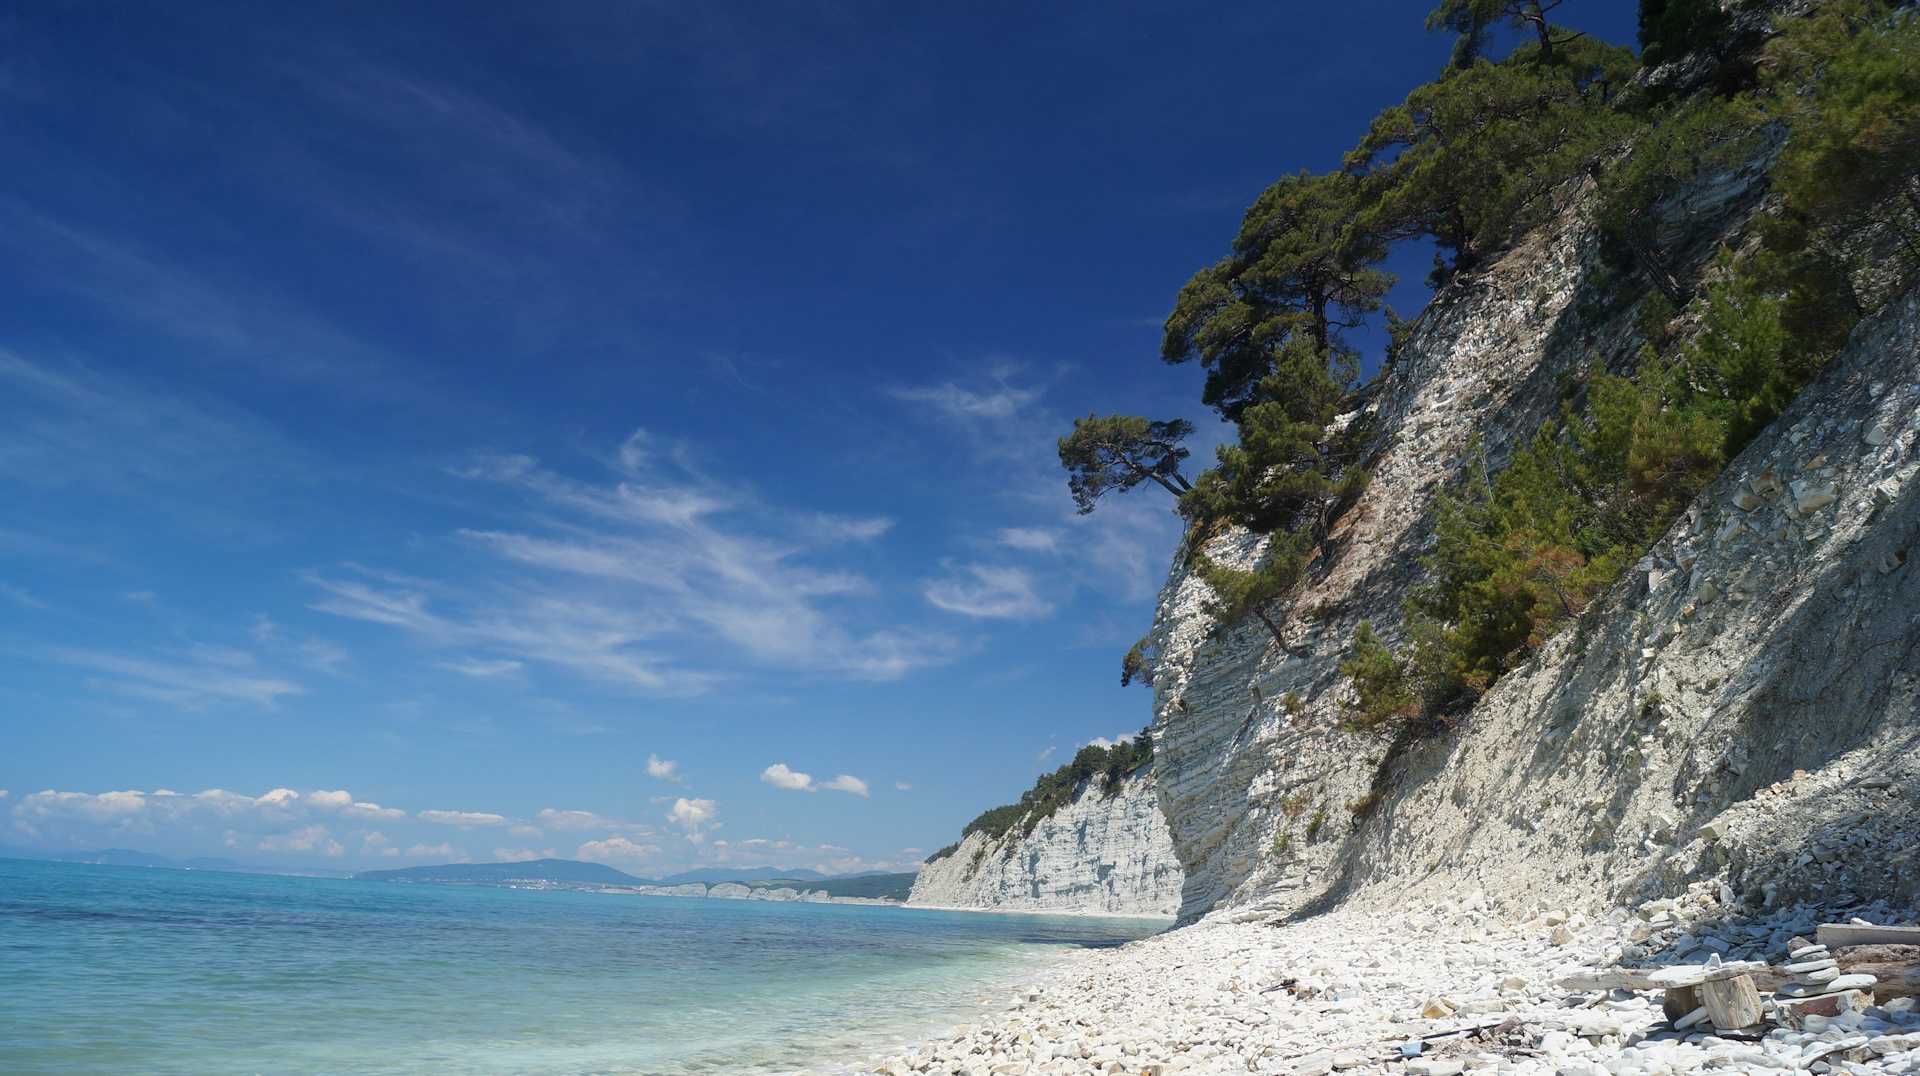 Популярные города и курорты черного моря